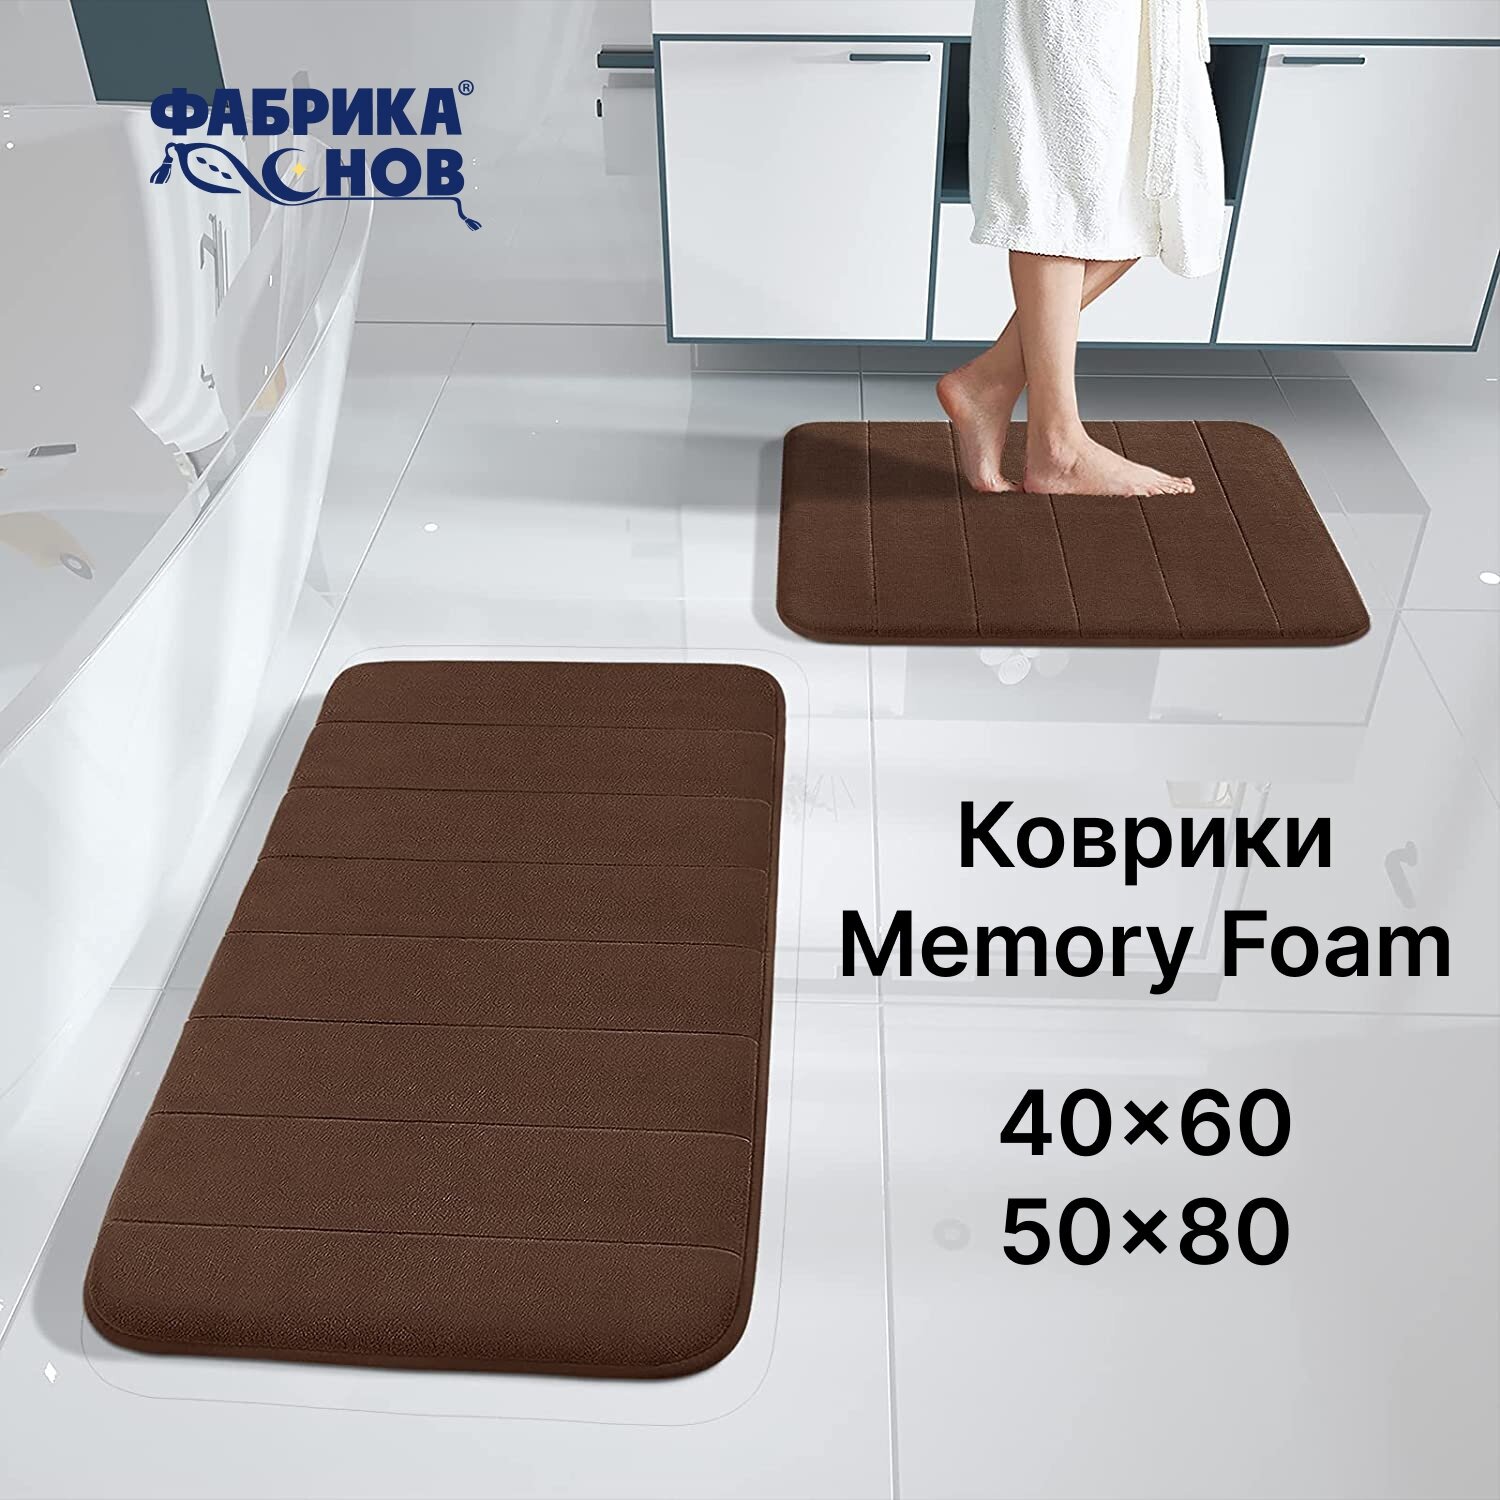 Набор ковриков для ванной и туалета противоскользящий 40х60 50x80, коричневый